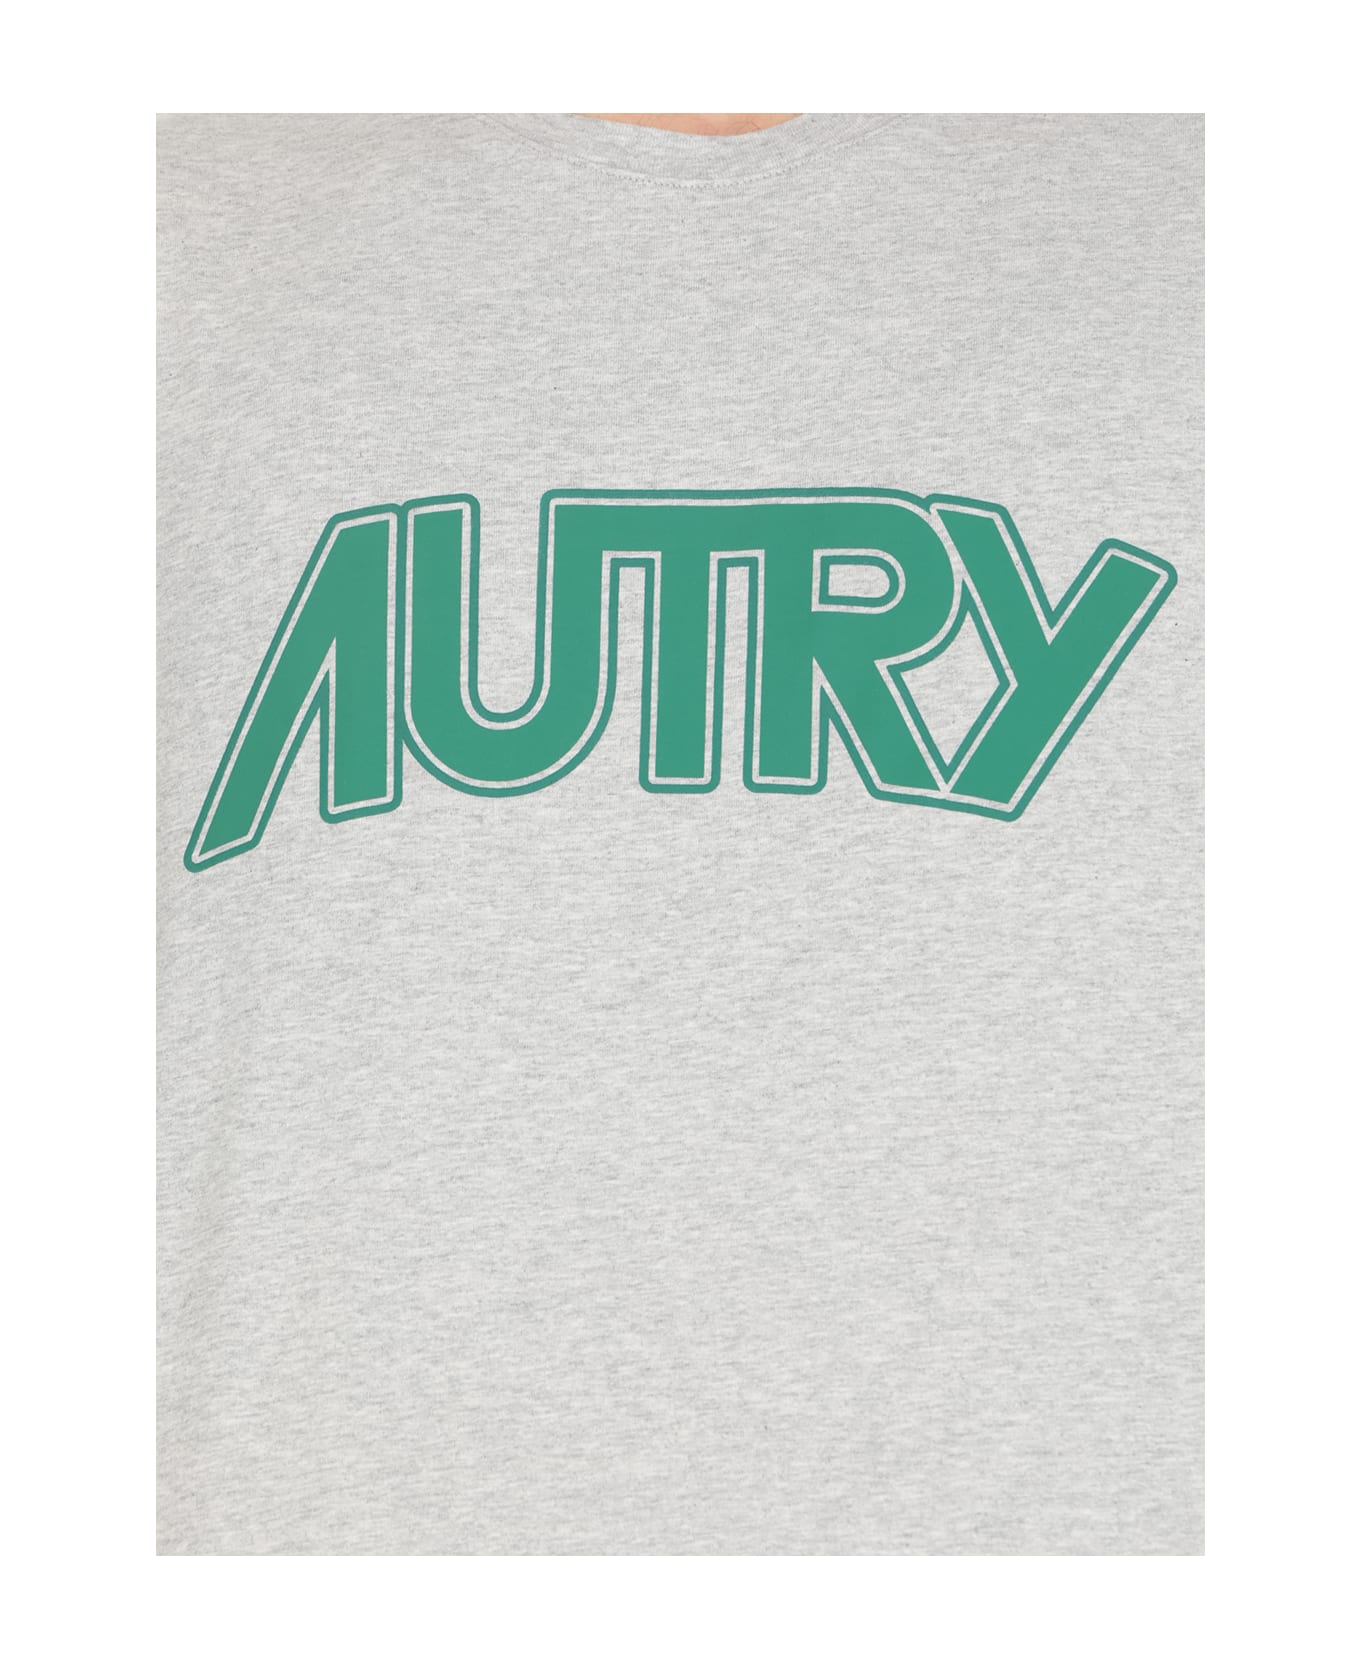 Autry Main T-shirt - Melange Tシャツ